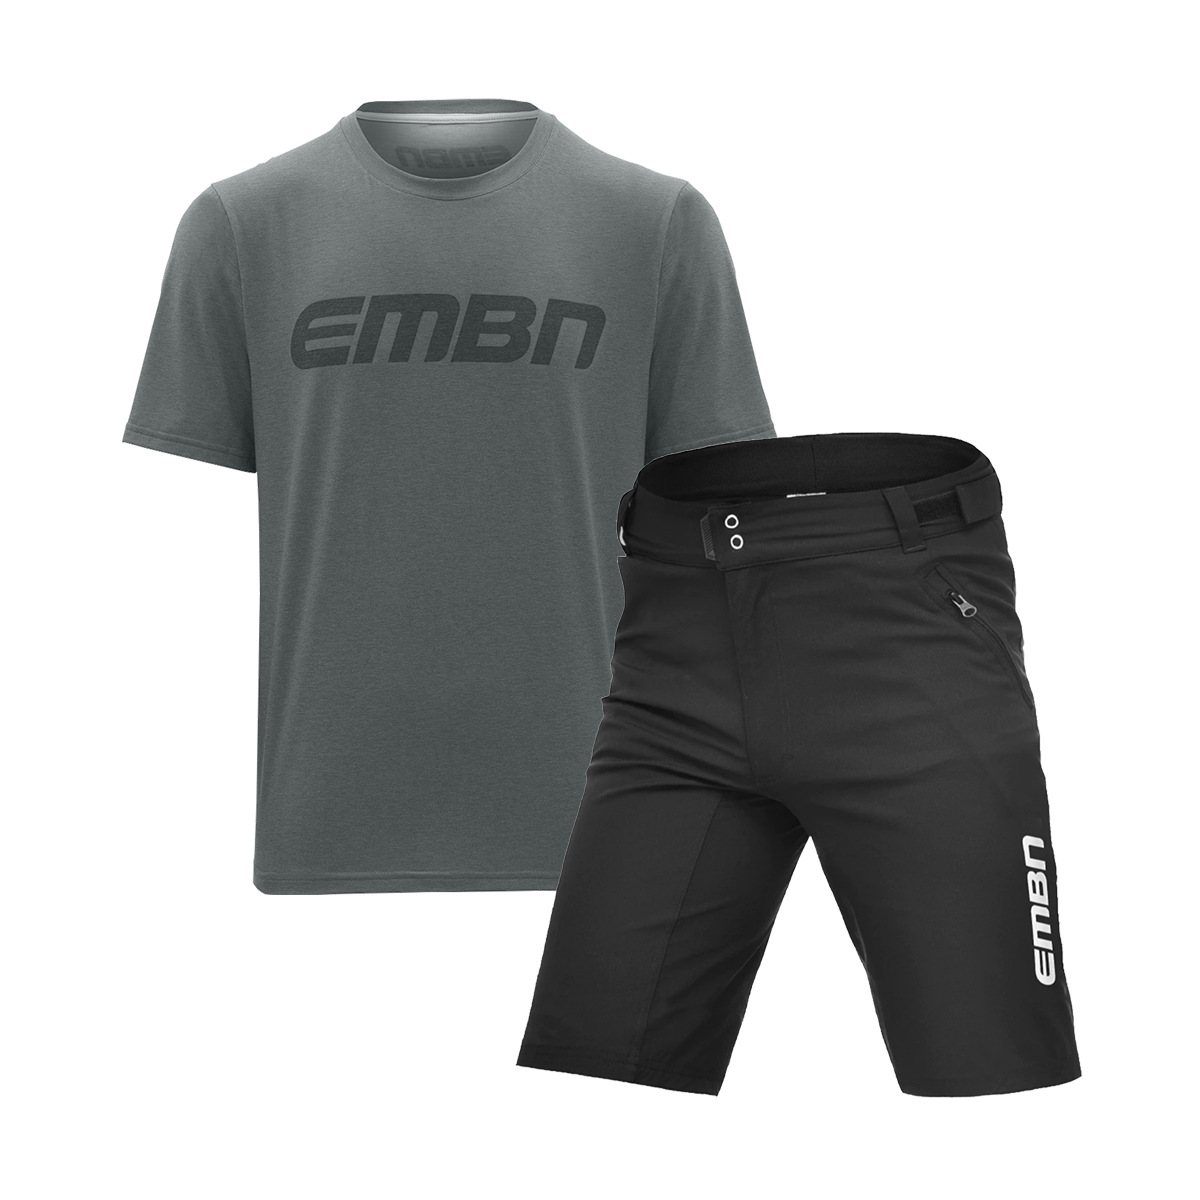 Paquete de pantalones cortos y camiseta técnica caqui de manga corta de EMBN